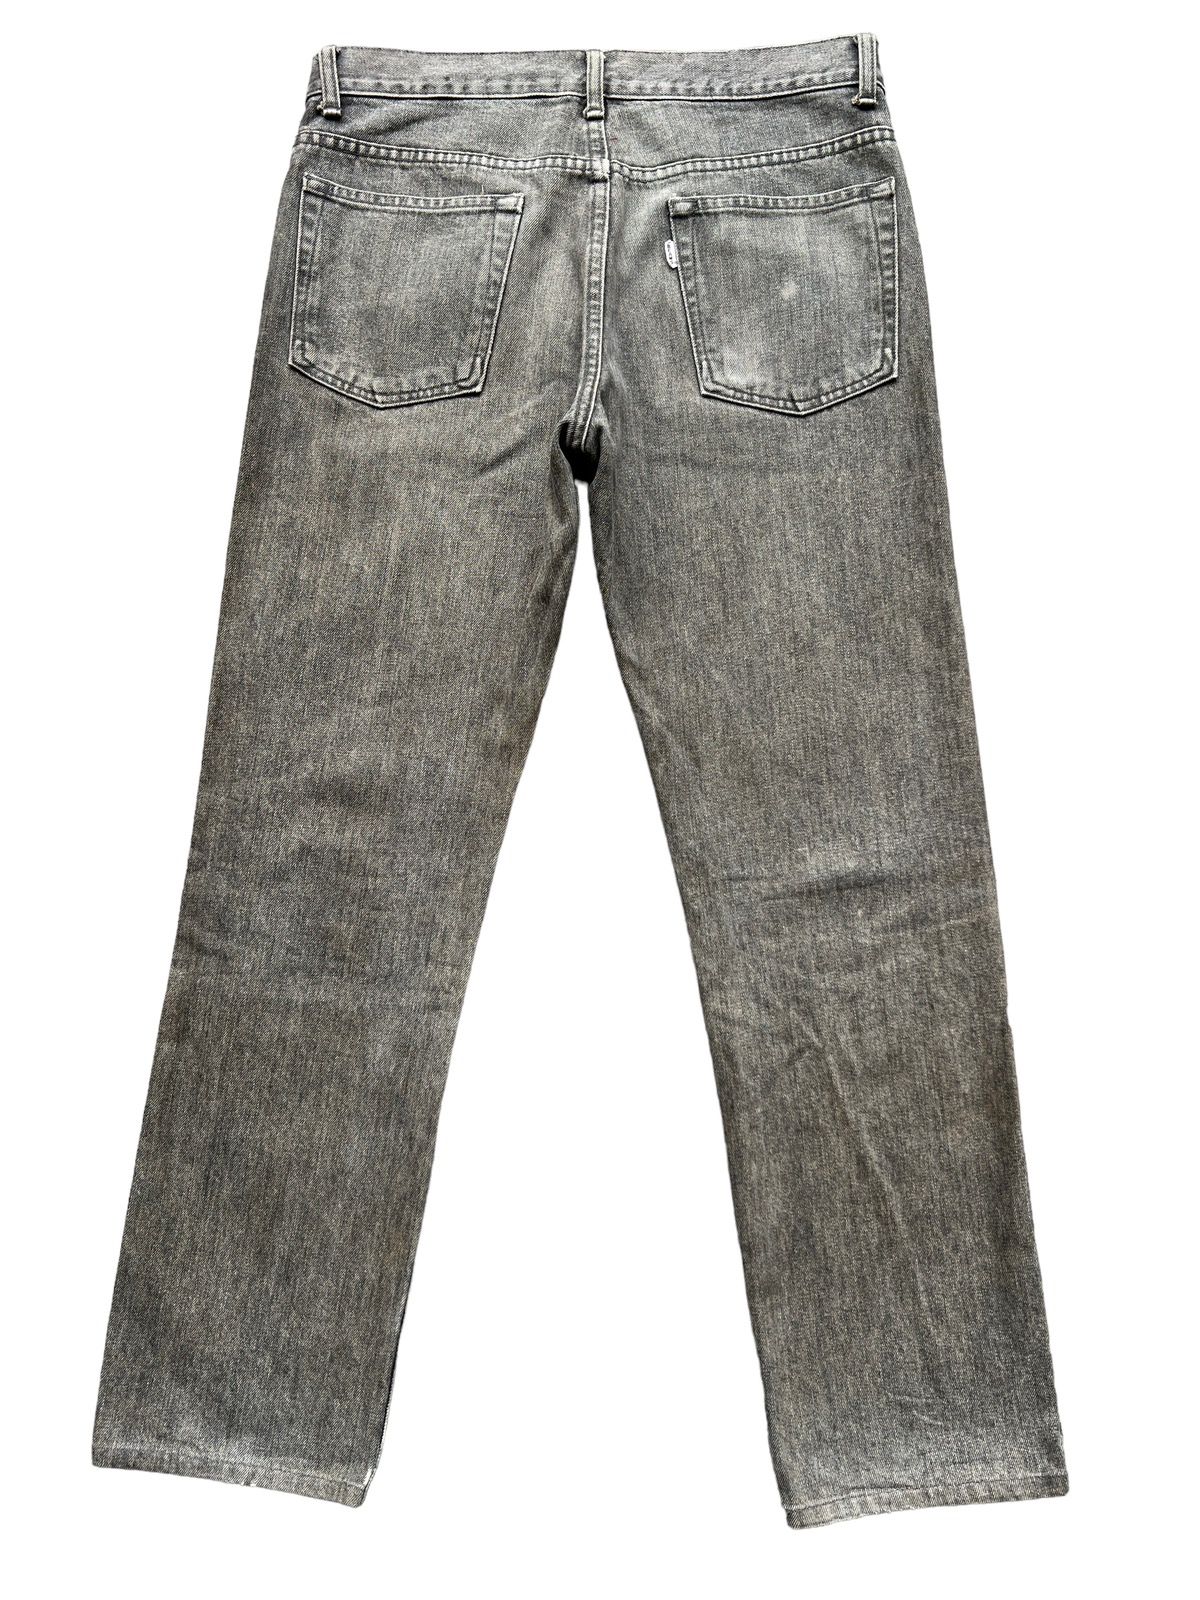 Vintage 90s Beams Skinny Fit Denim Jeans 32x29 - 2